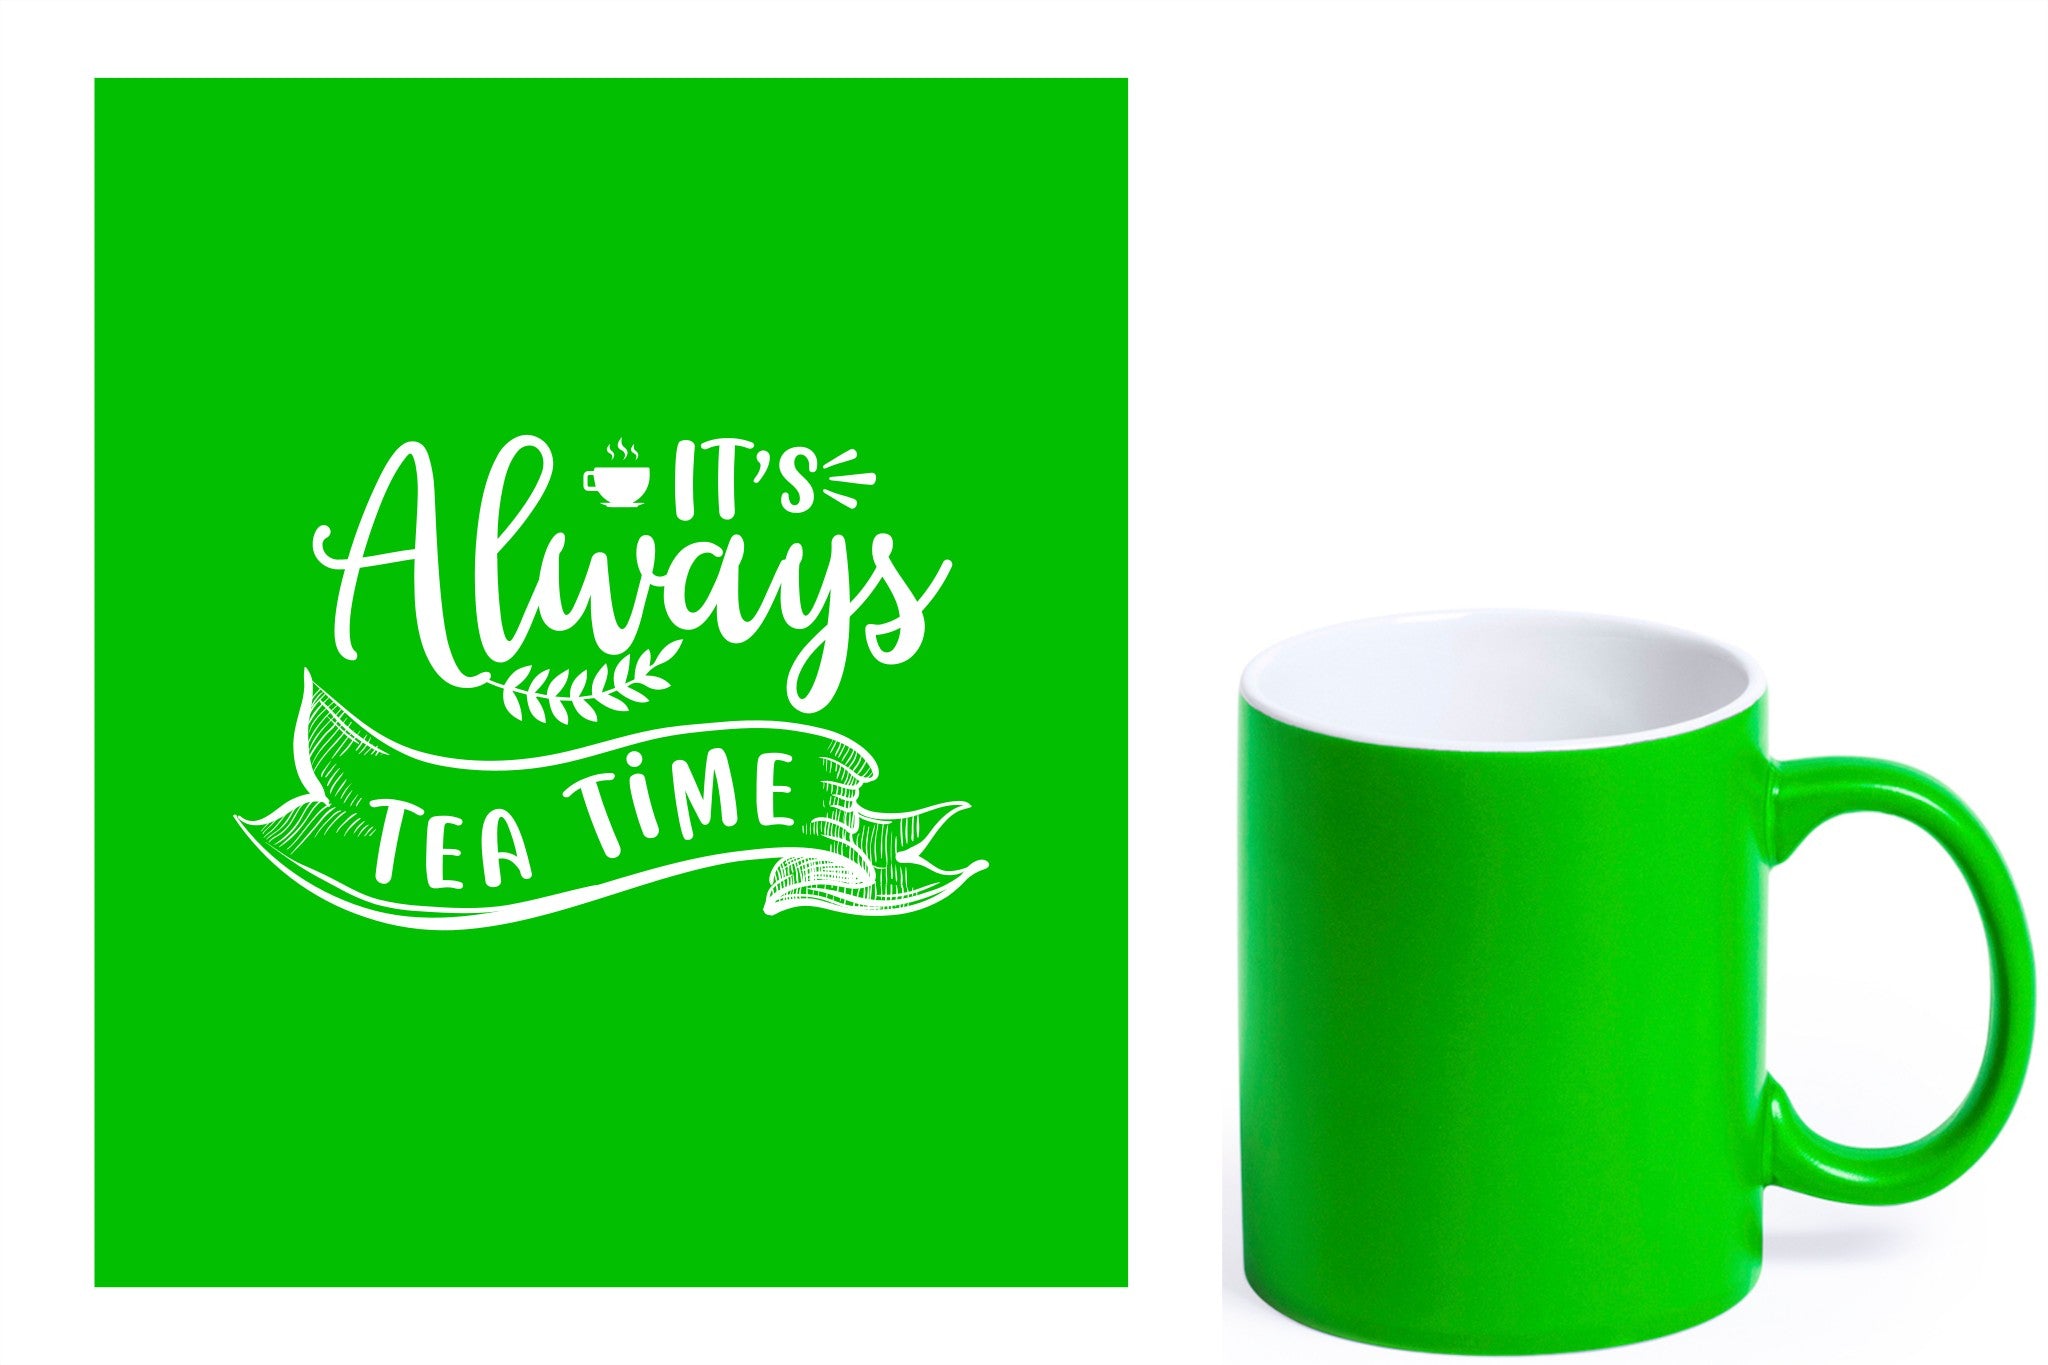 groene keramische mok met witte gravure  'It's always tea time'.